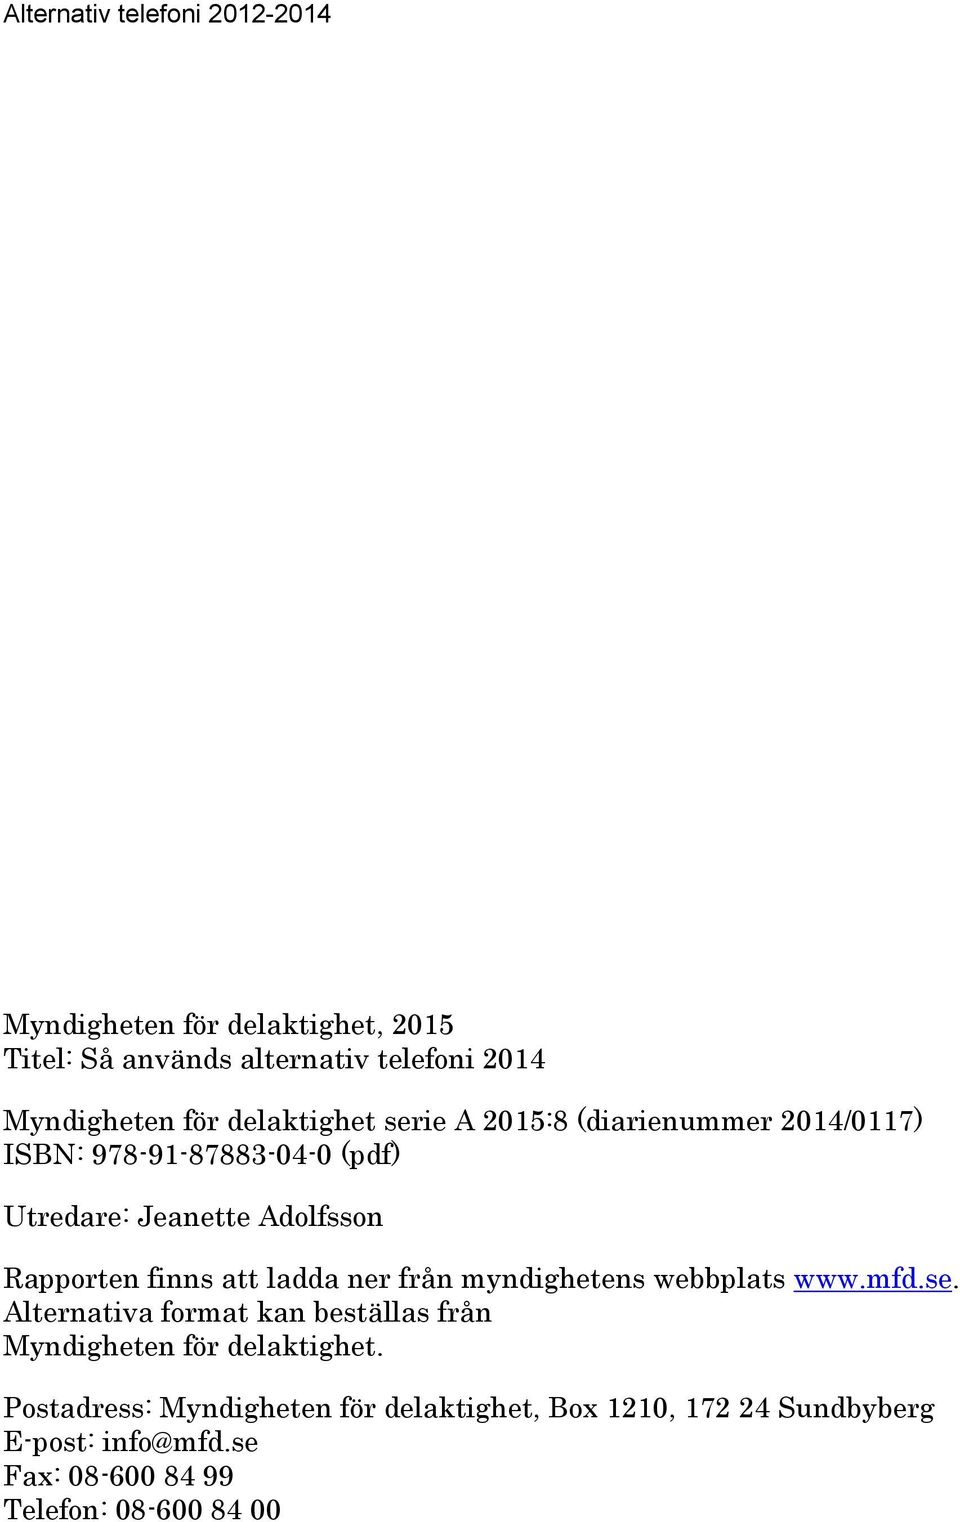 ner från myndighetens webbplats www.mfd.se. Alternativa format kan beställas från Myndigheten för delaktighet.